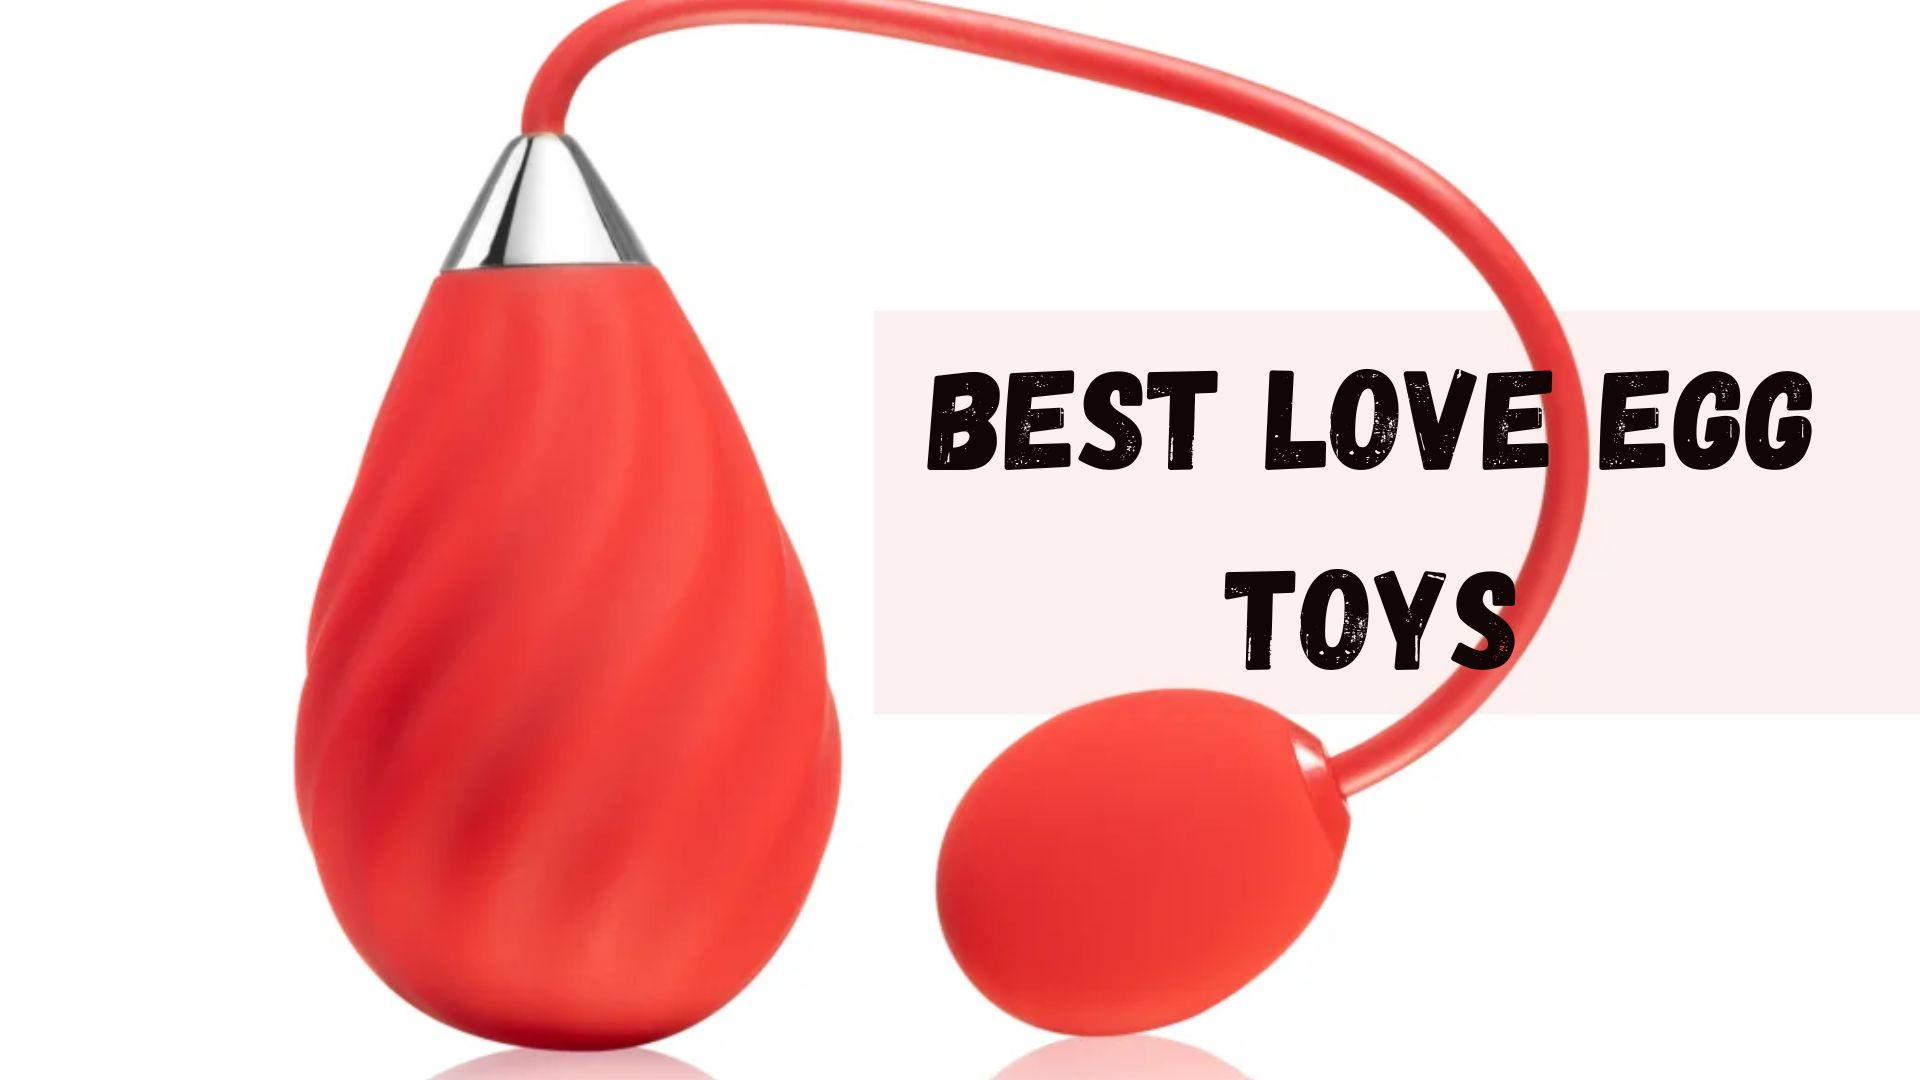 Best love egg toys